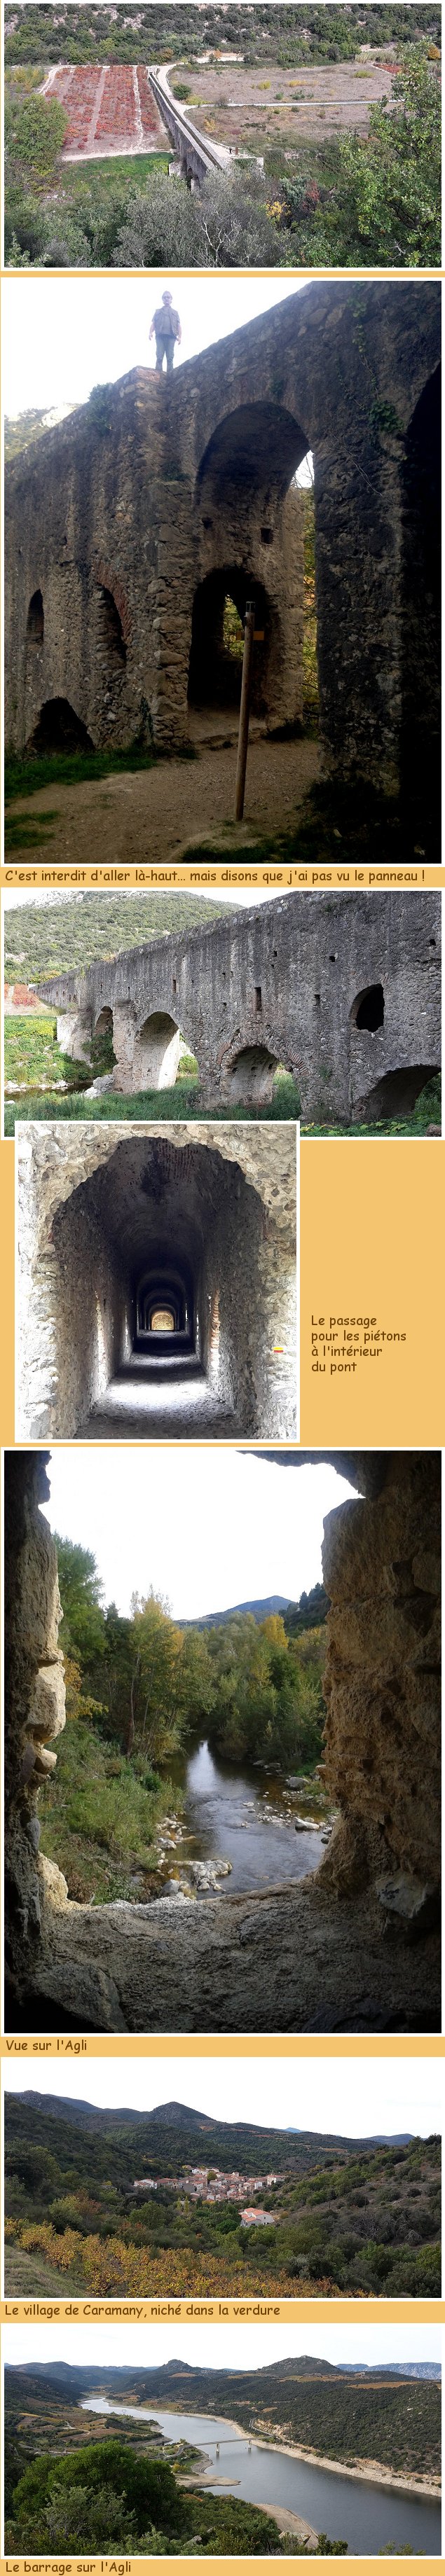 L’aqueduc romain sur l'Agli